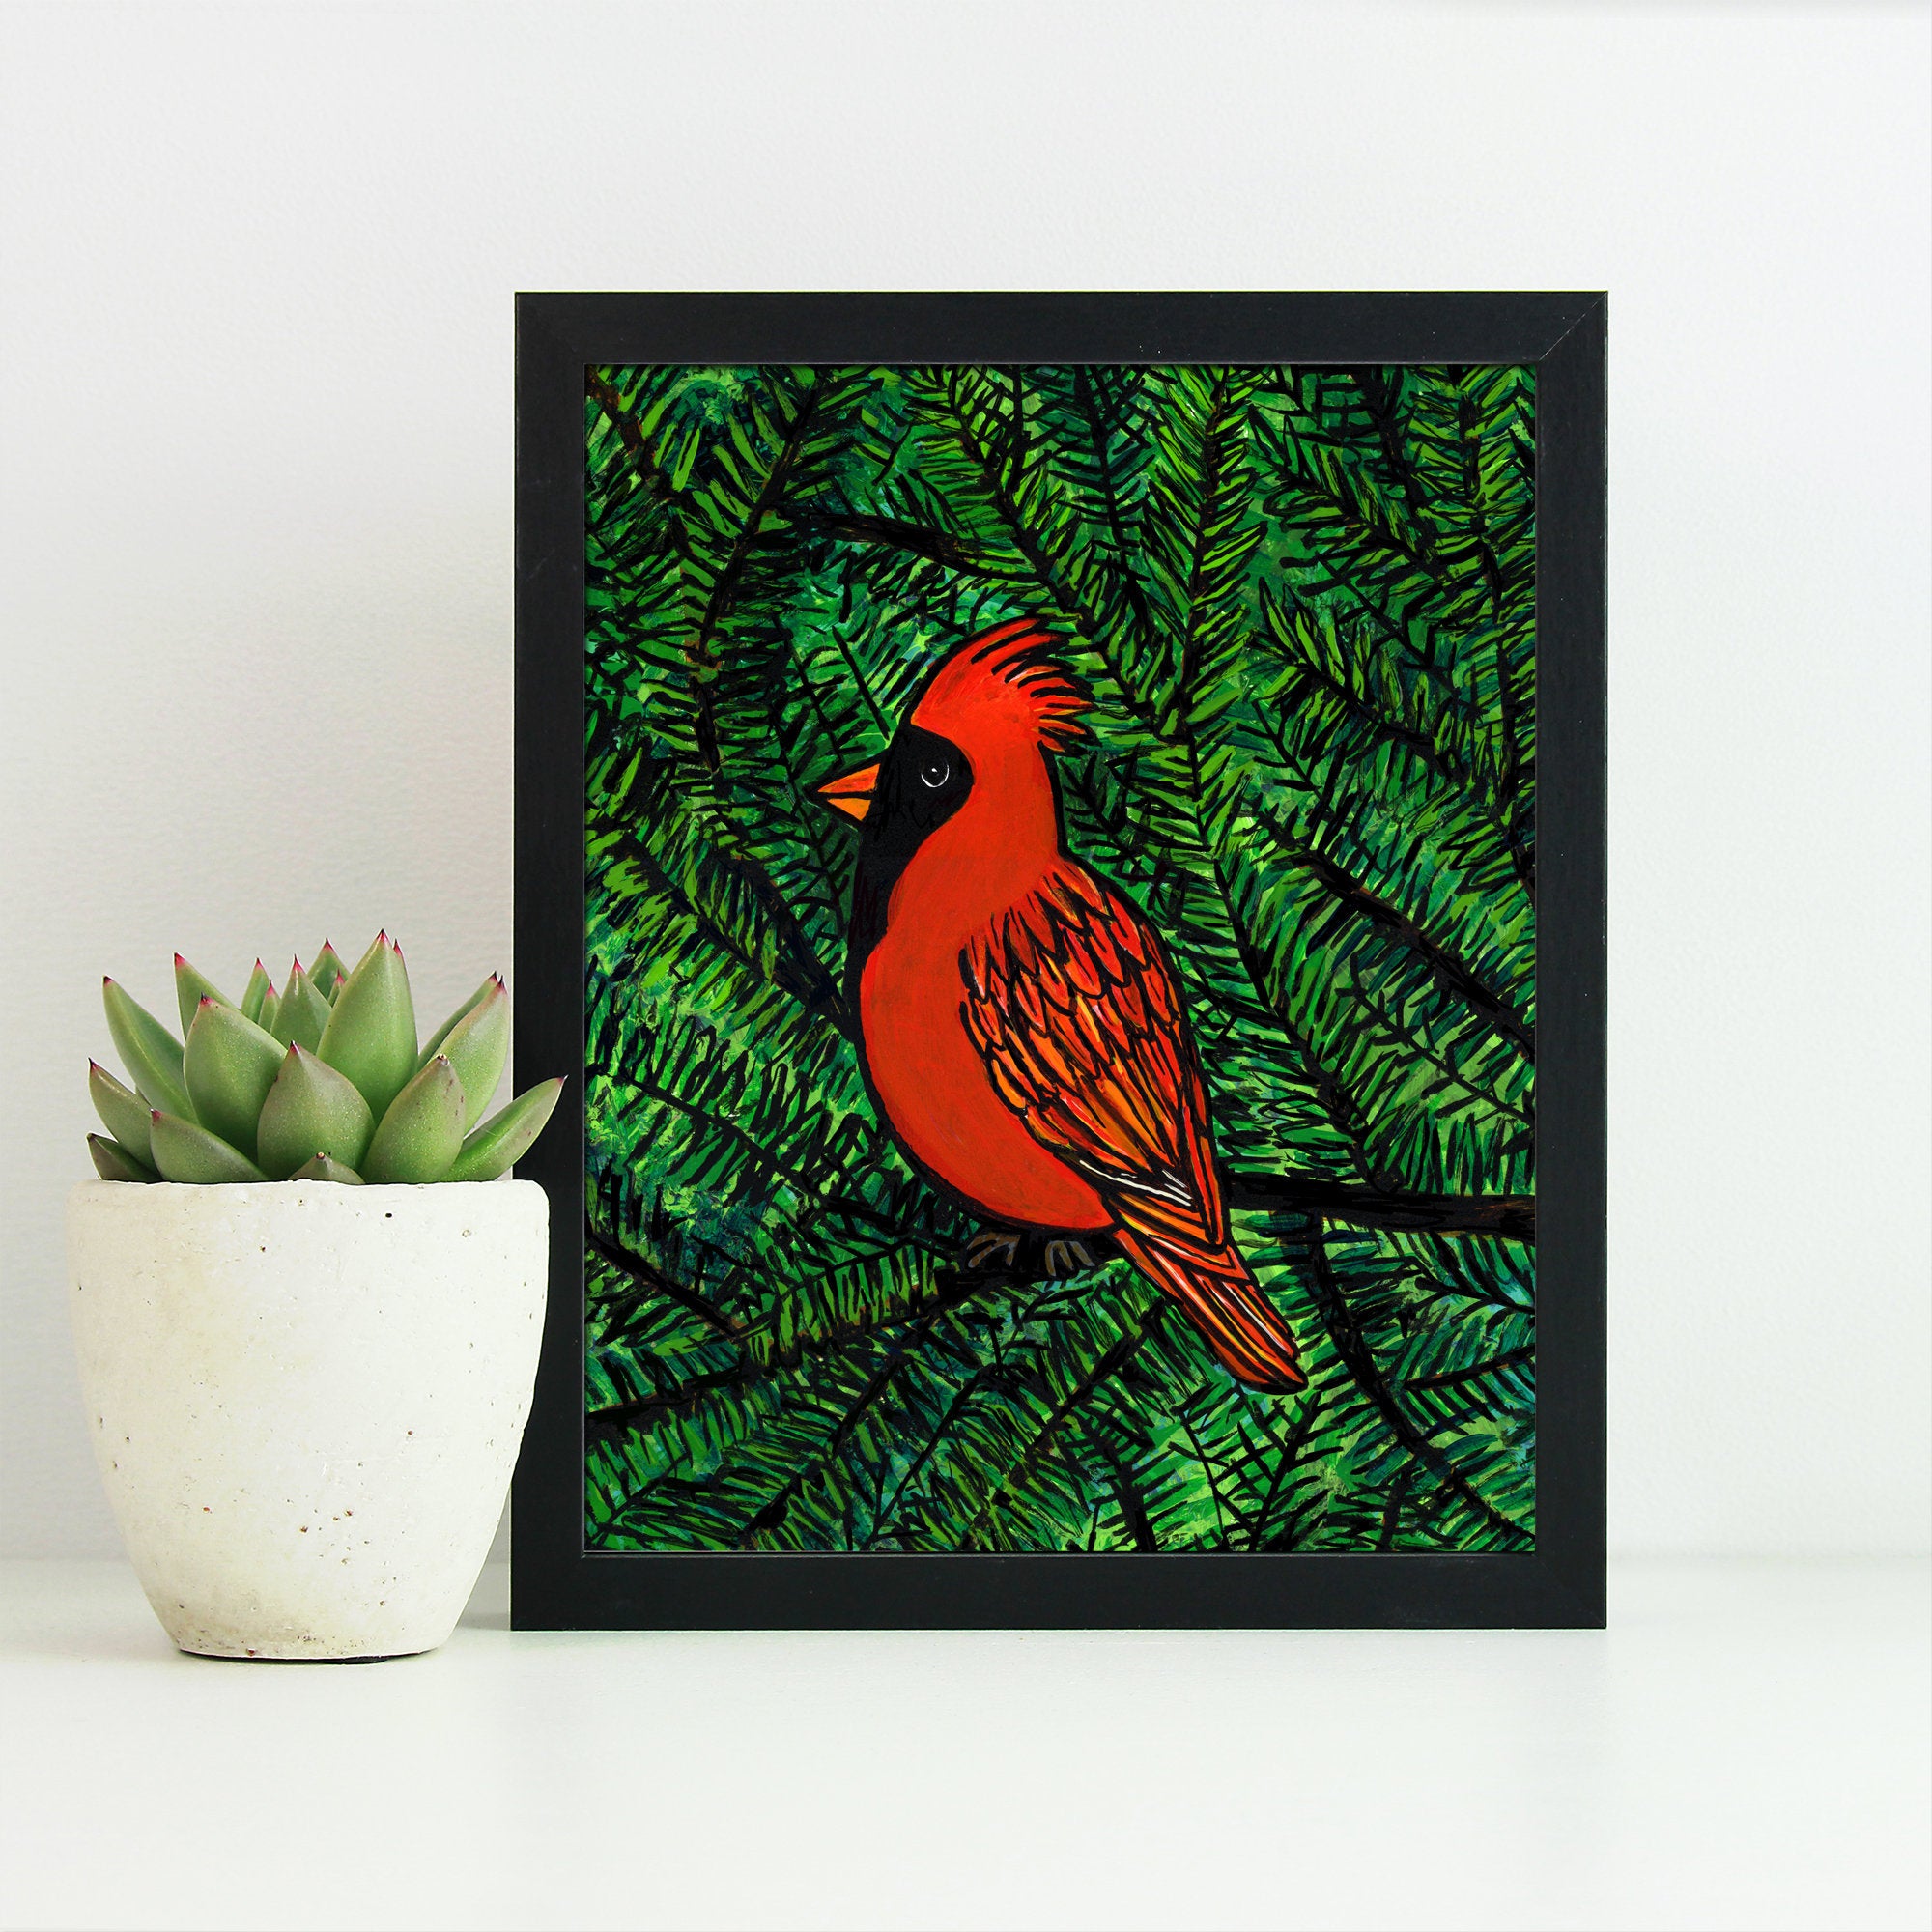 Cardinal Art Print - 8x10 Bird Print with Optional Black Mat - Cardinal in Pine Tree - Nature and Animal Art